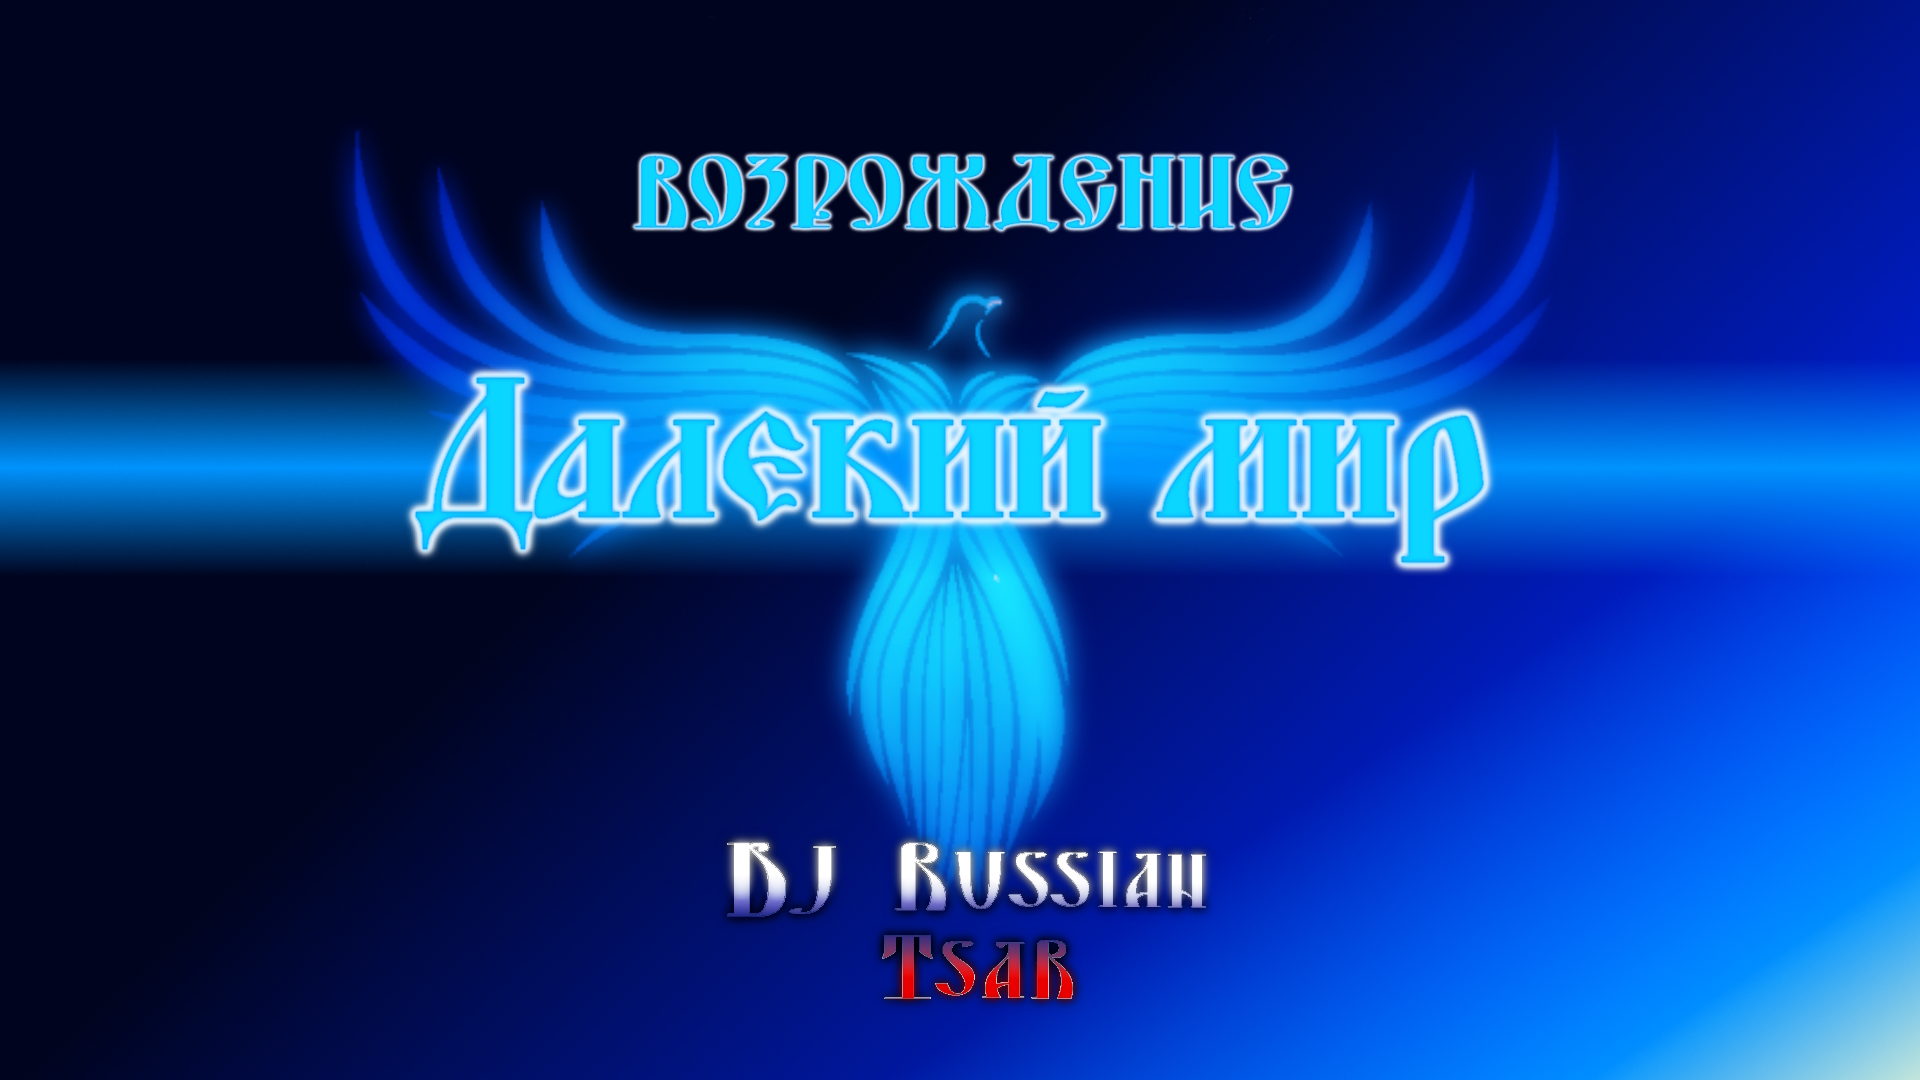 DJ Russian Tsar - Далёкий мир (Audio Official)